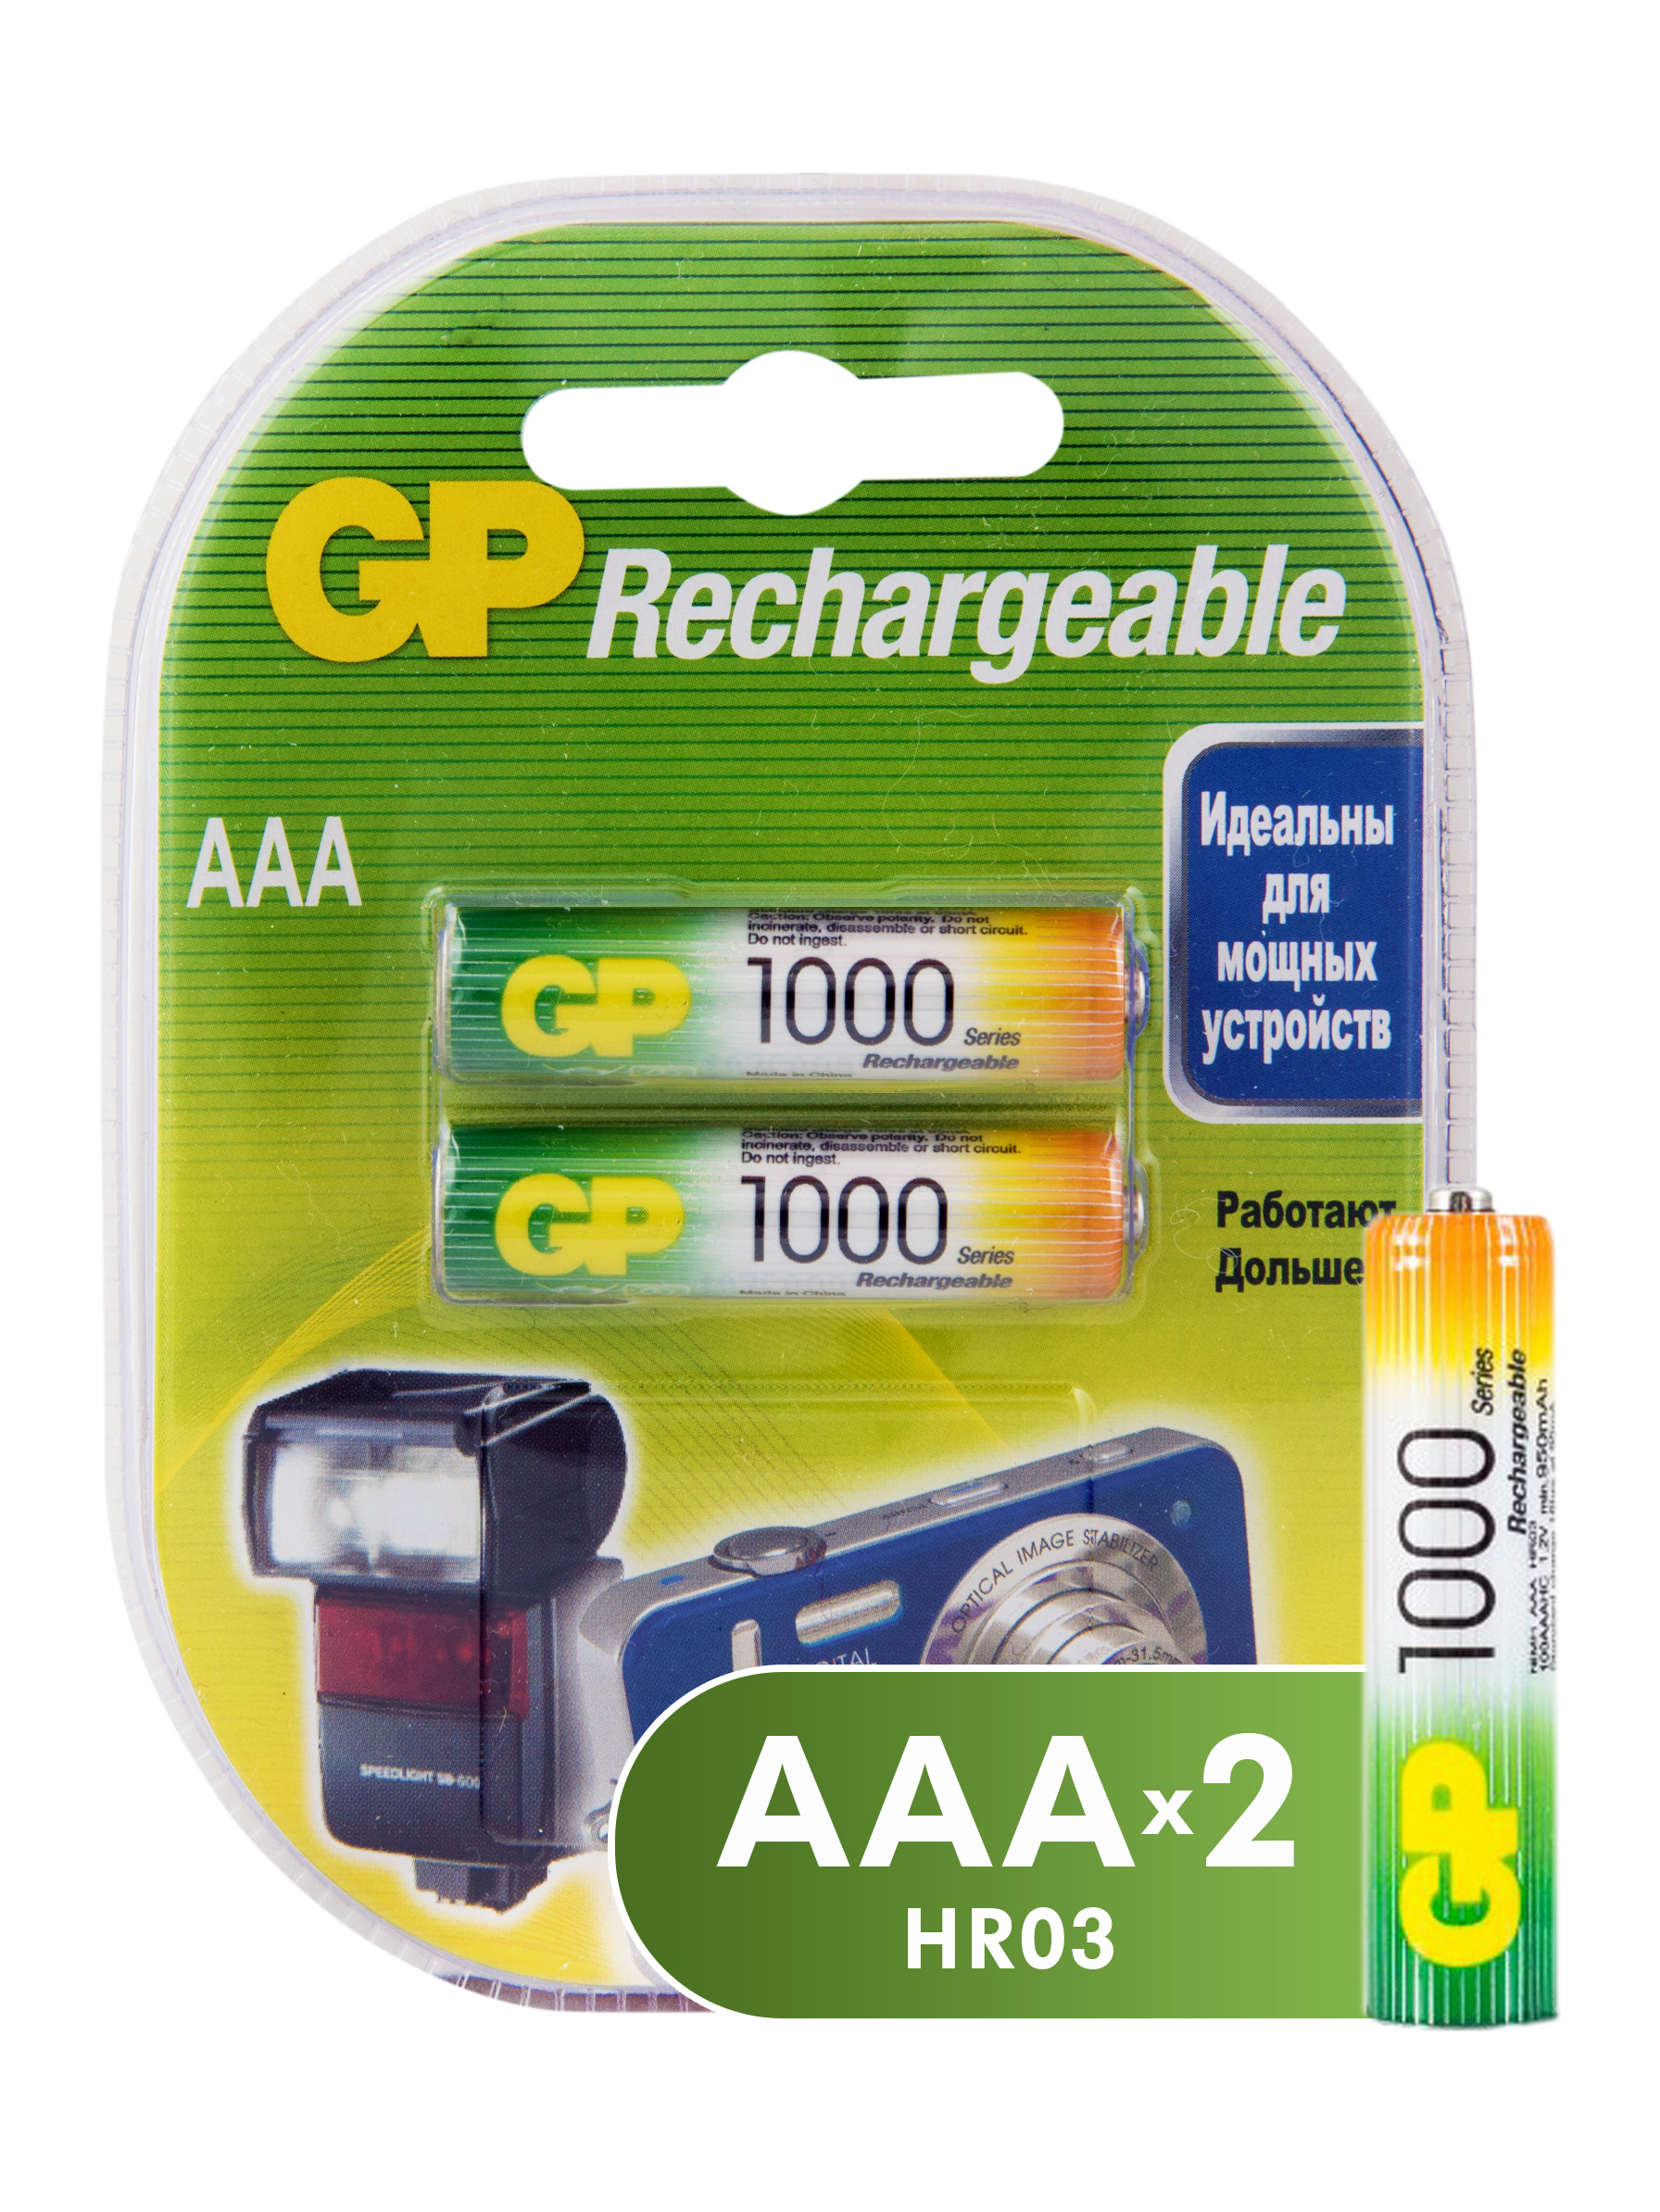 Аккумуляторы GP Batteries перезаряжаемые, AAA, 930 мАч, 2 шт перезаряжаемые аккумуляторы gp